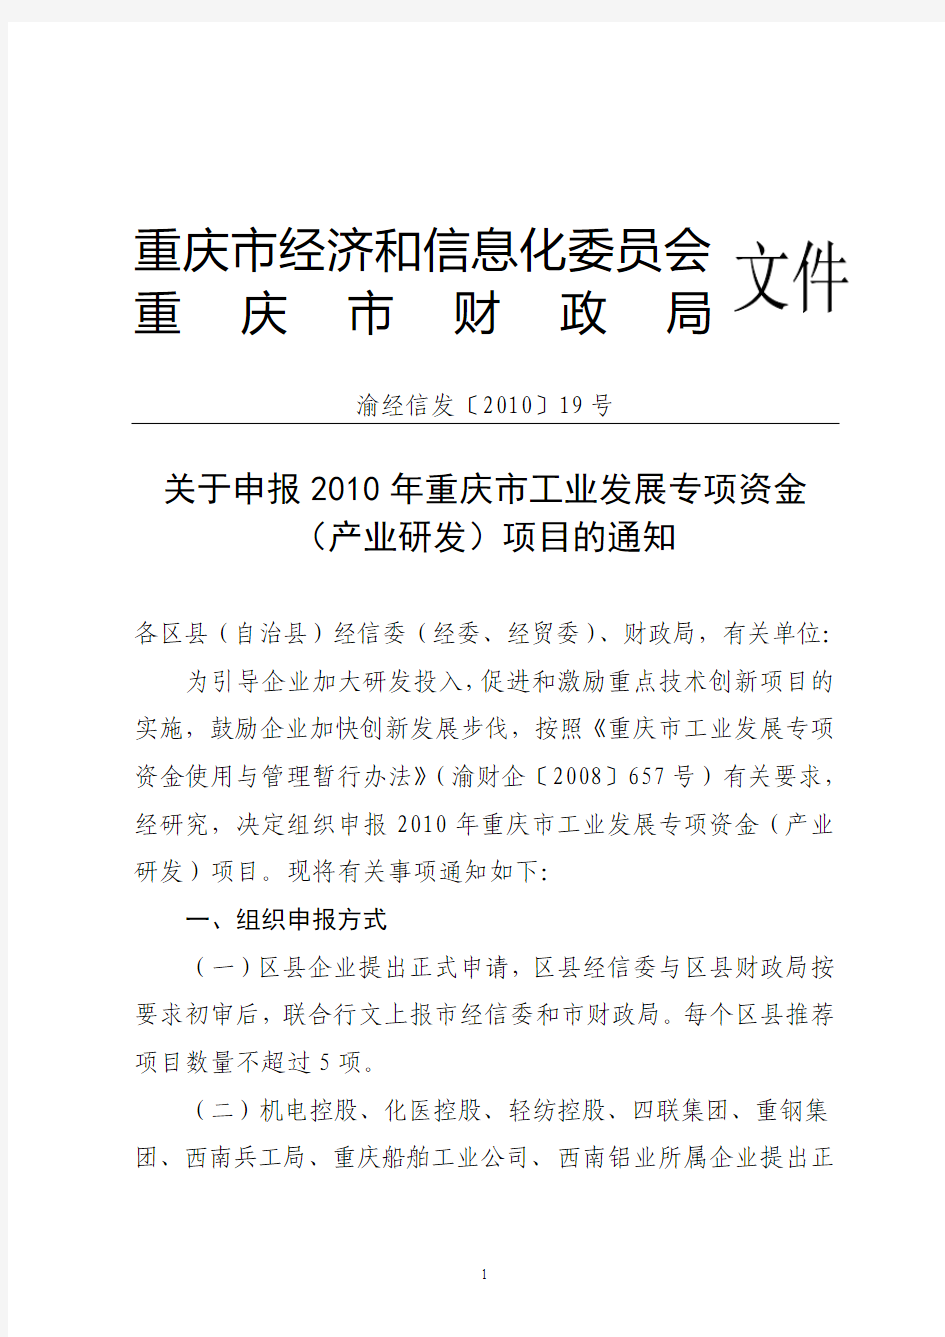 关于申报2010年重庆市工业发展专项资金(产业研发)项目的通知